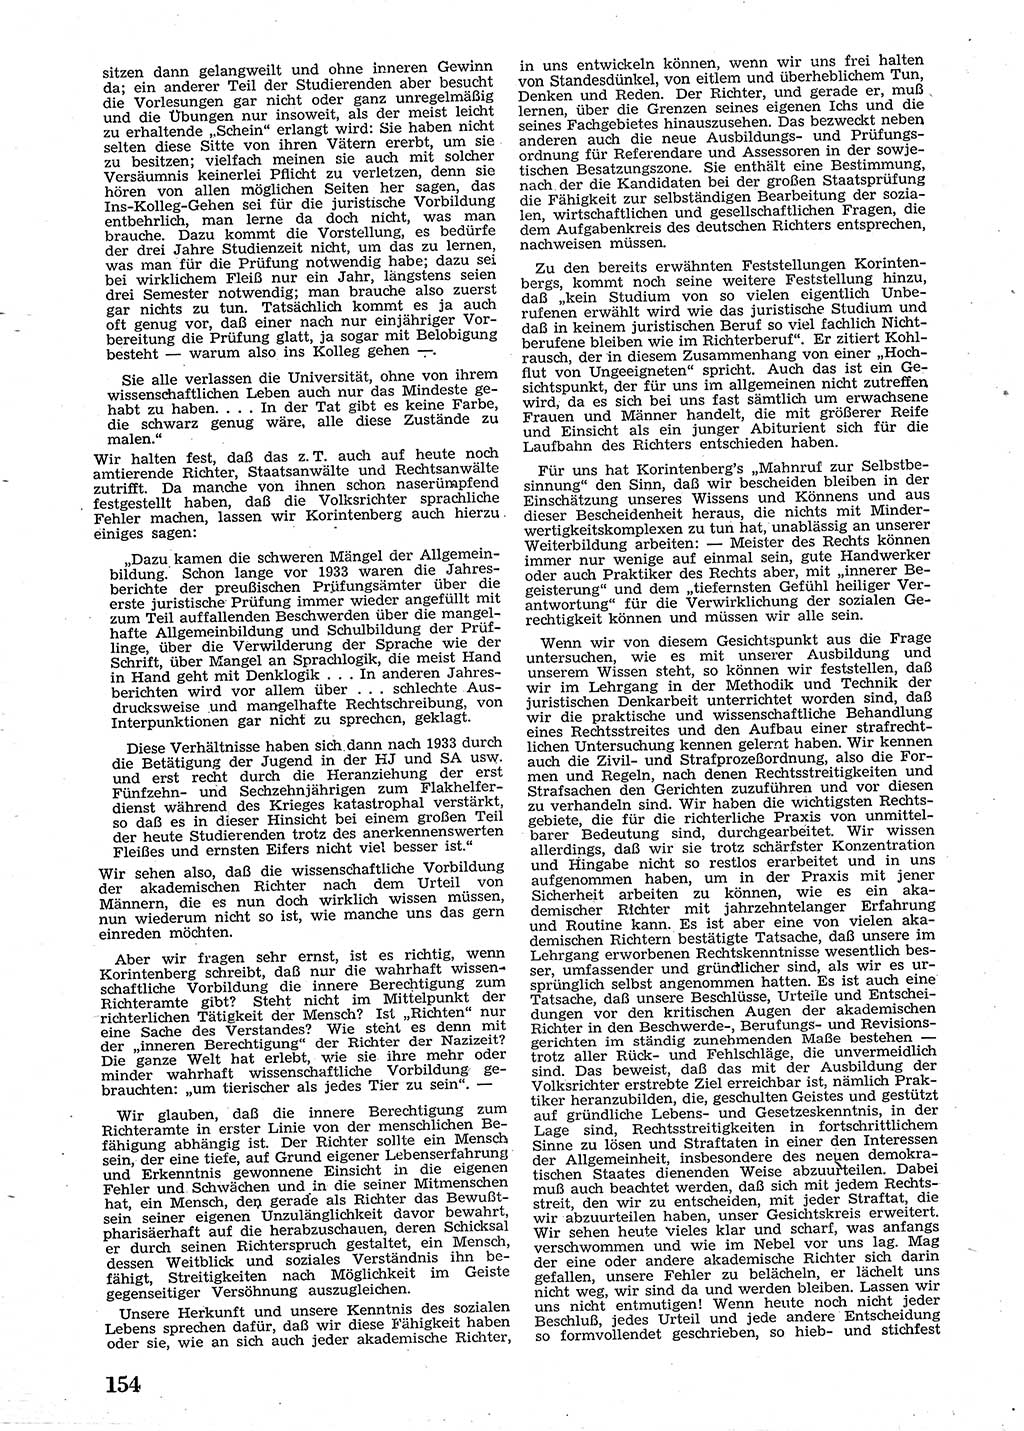 Neue Justiz (NJ), Zeitschrift für Recht und Rechtswissenschaft [Sowjetische Besatzungszone (SBZ) Deutschland], 2. Jahrgang 1948, Seite 154 (NJ SBZ Dtl. 1948, S. 154)